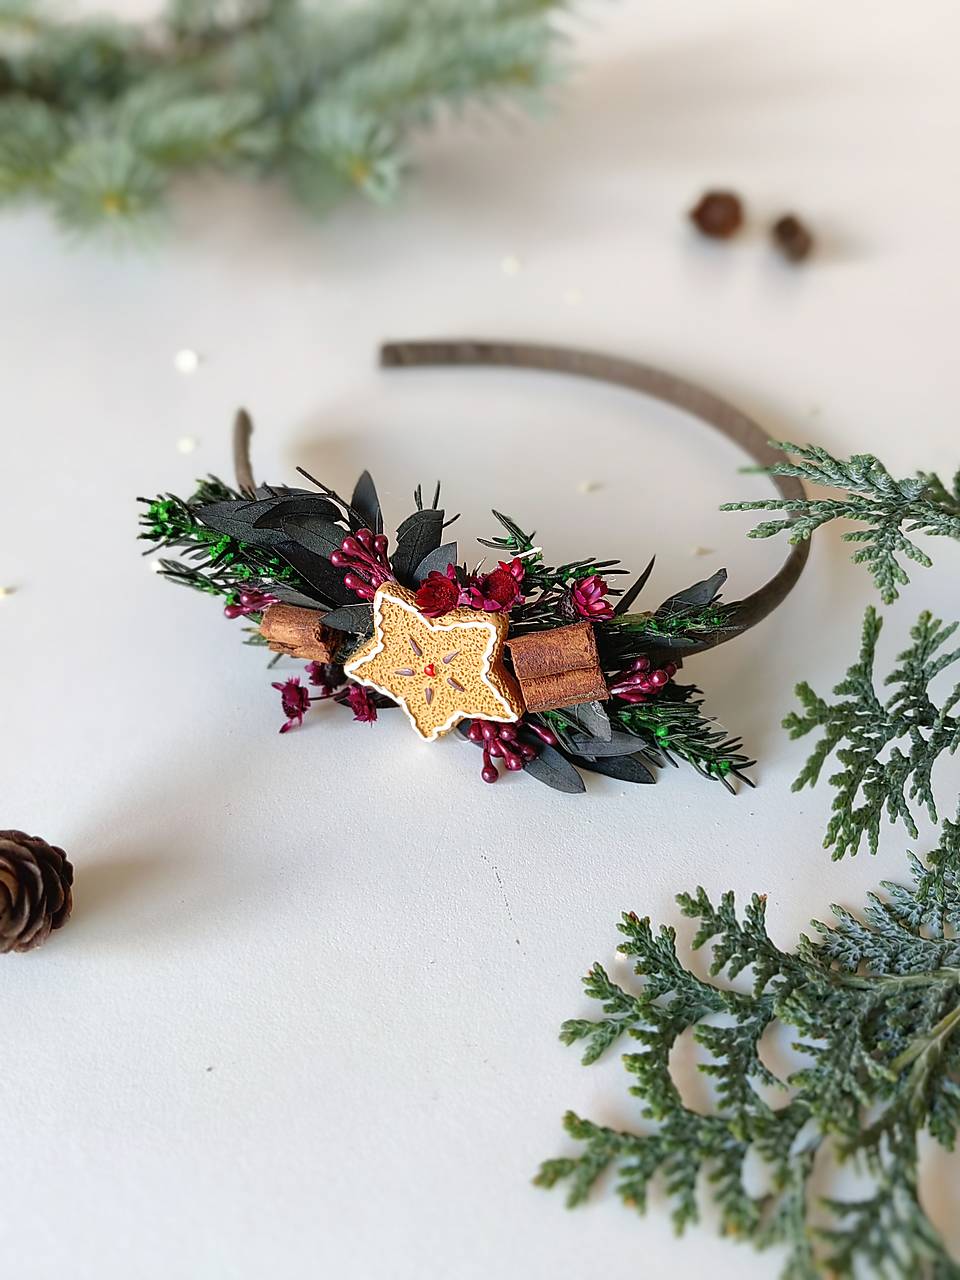 Vianočná čelenka "prach hviezdnych prianí" - škoricová hviezda